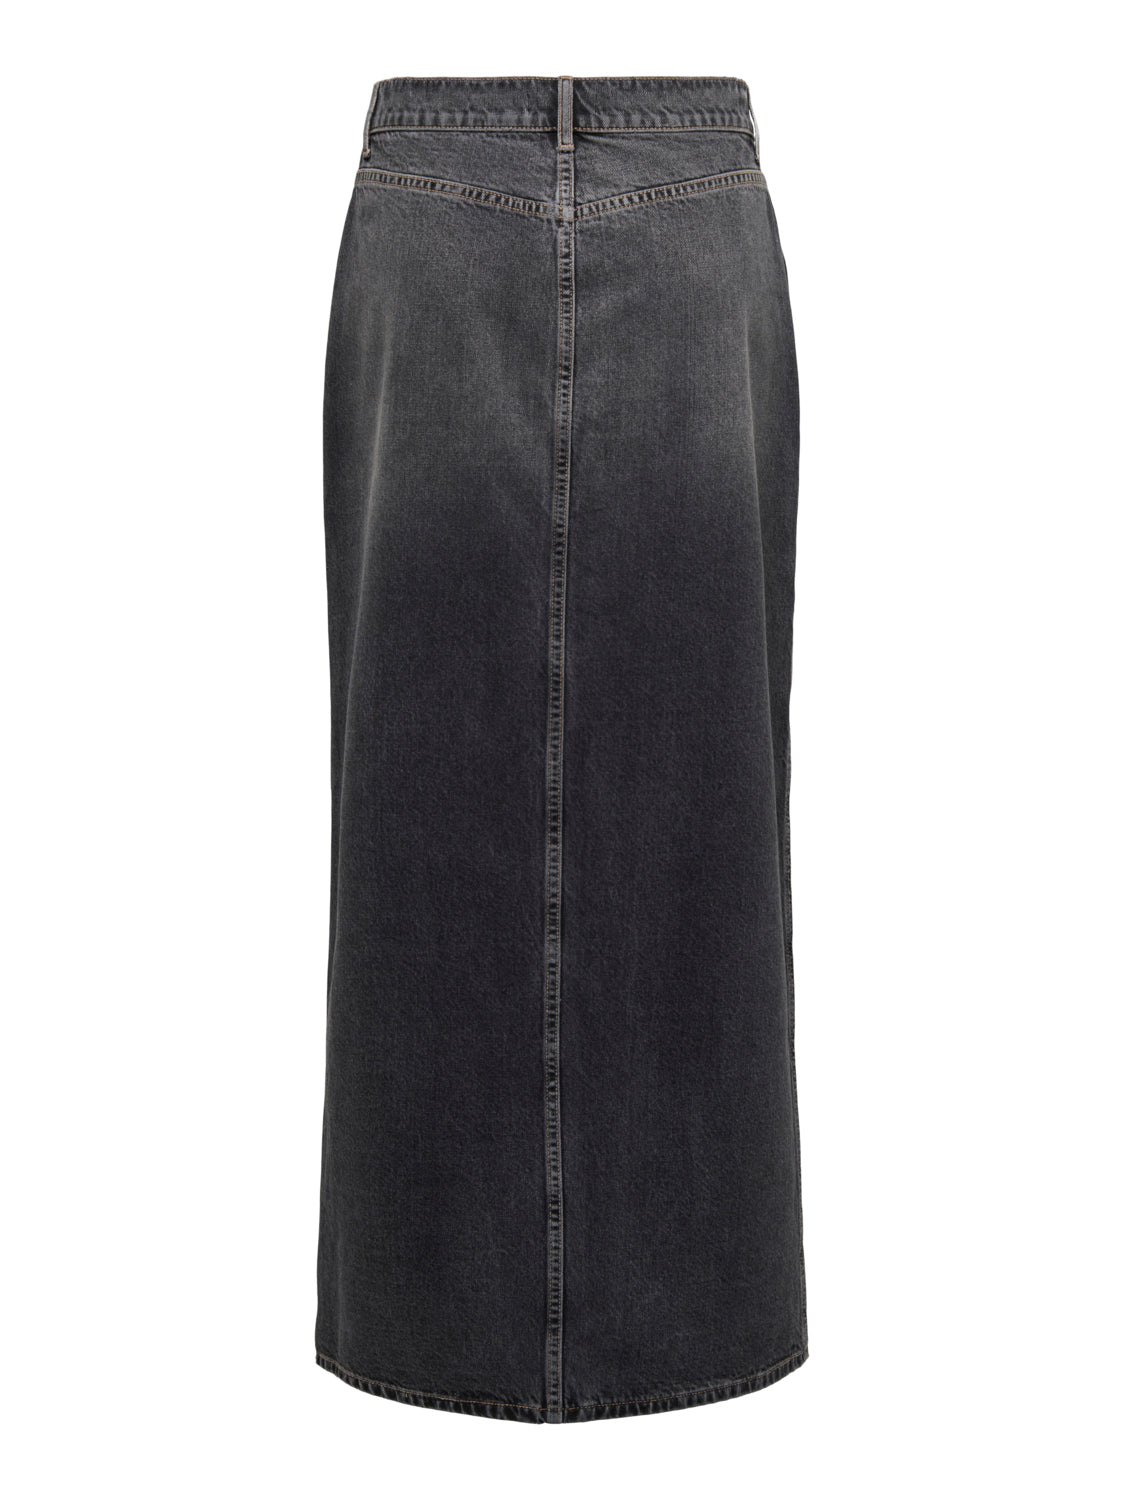 ONLCILLA Skirt - Washed Black